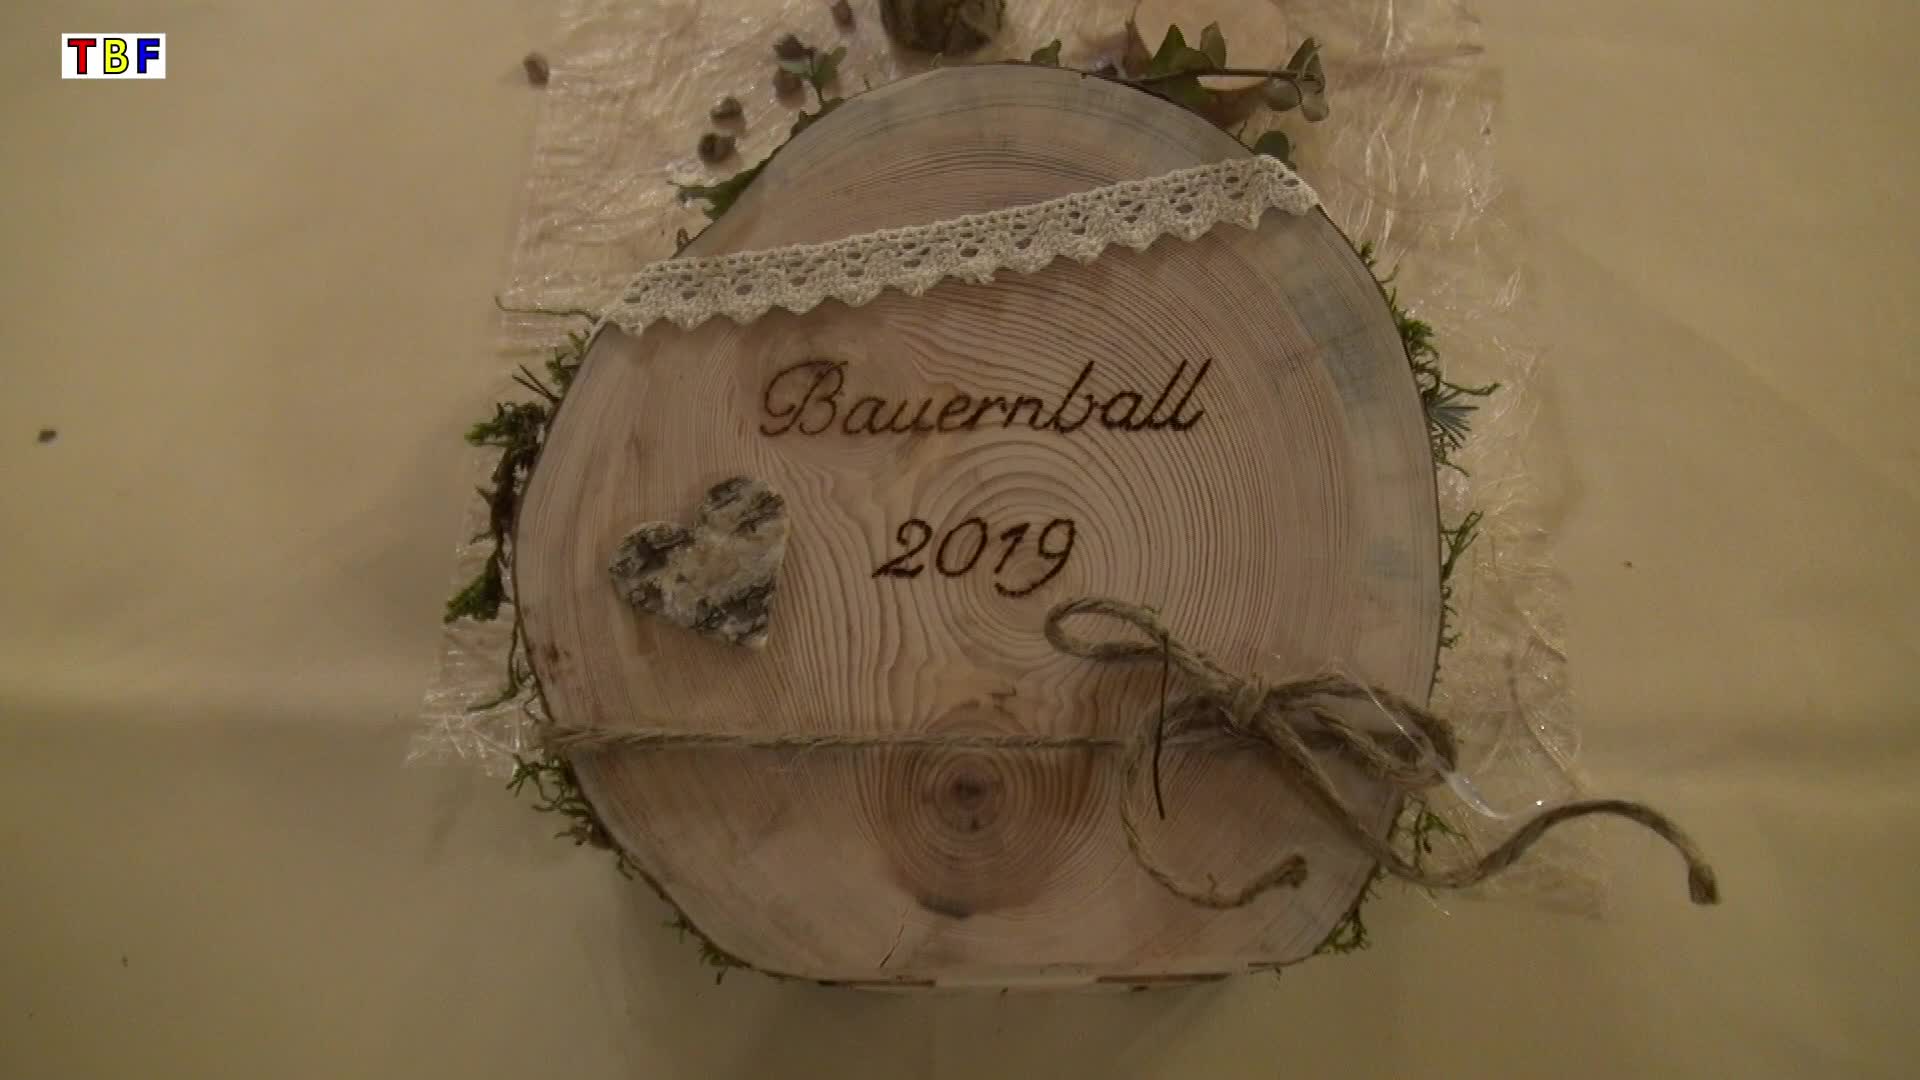 Bauernball 2019